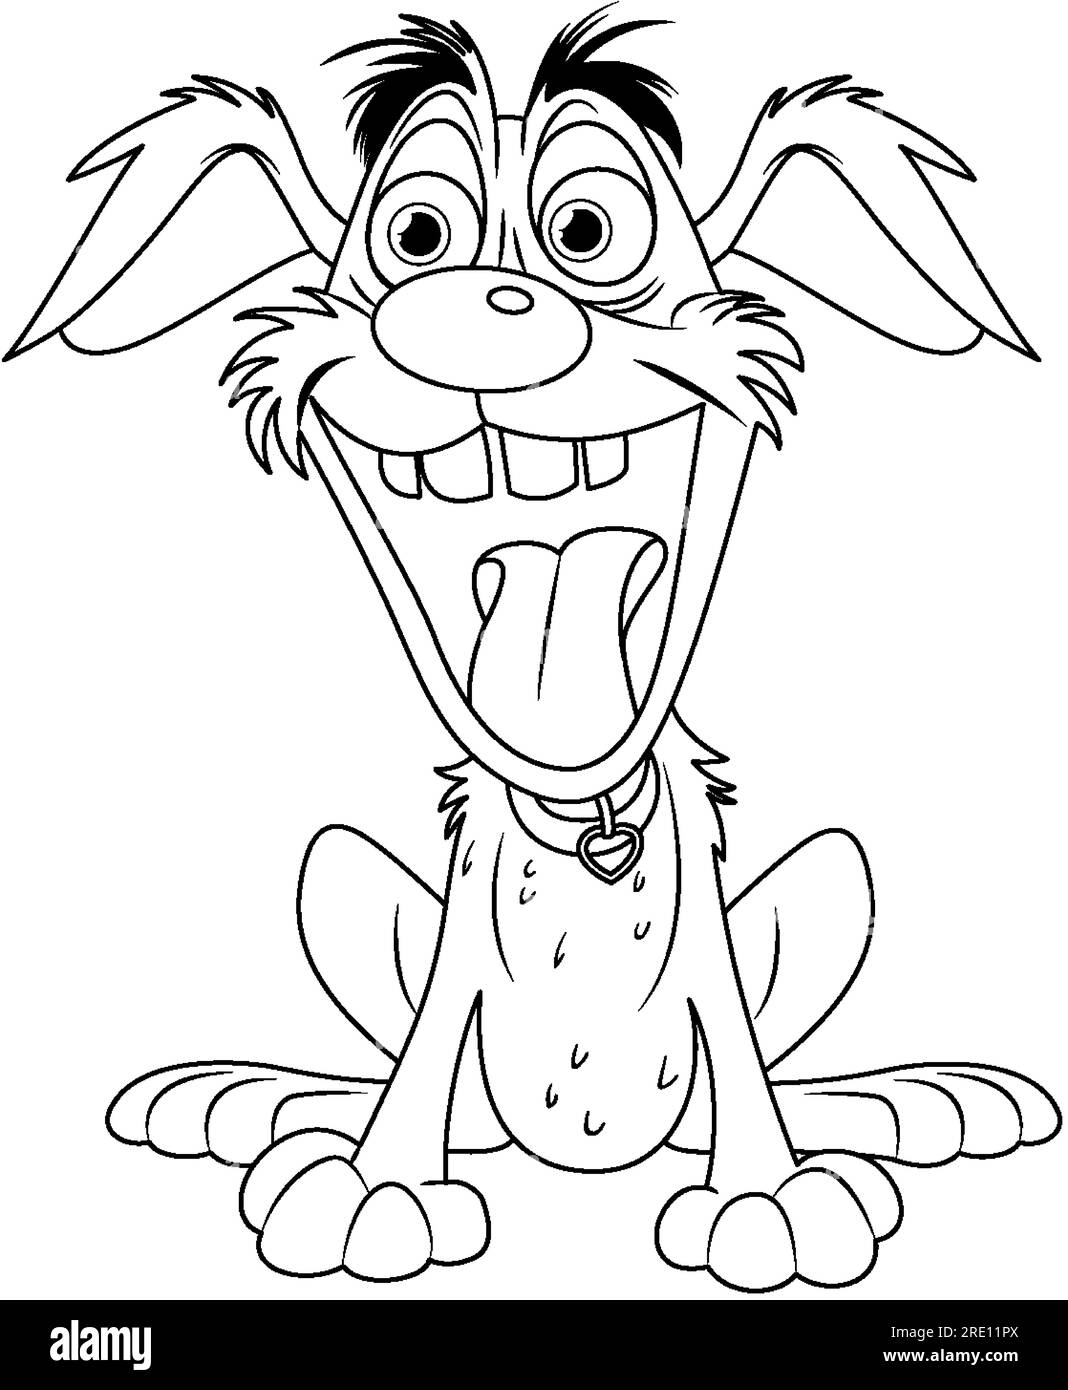 Illustrazione carina e giocosa dei cartoni animati da cani pazzi Illustrazione Vettoriale